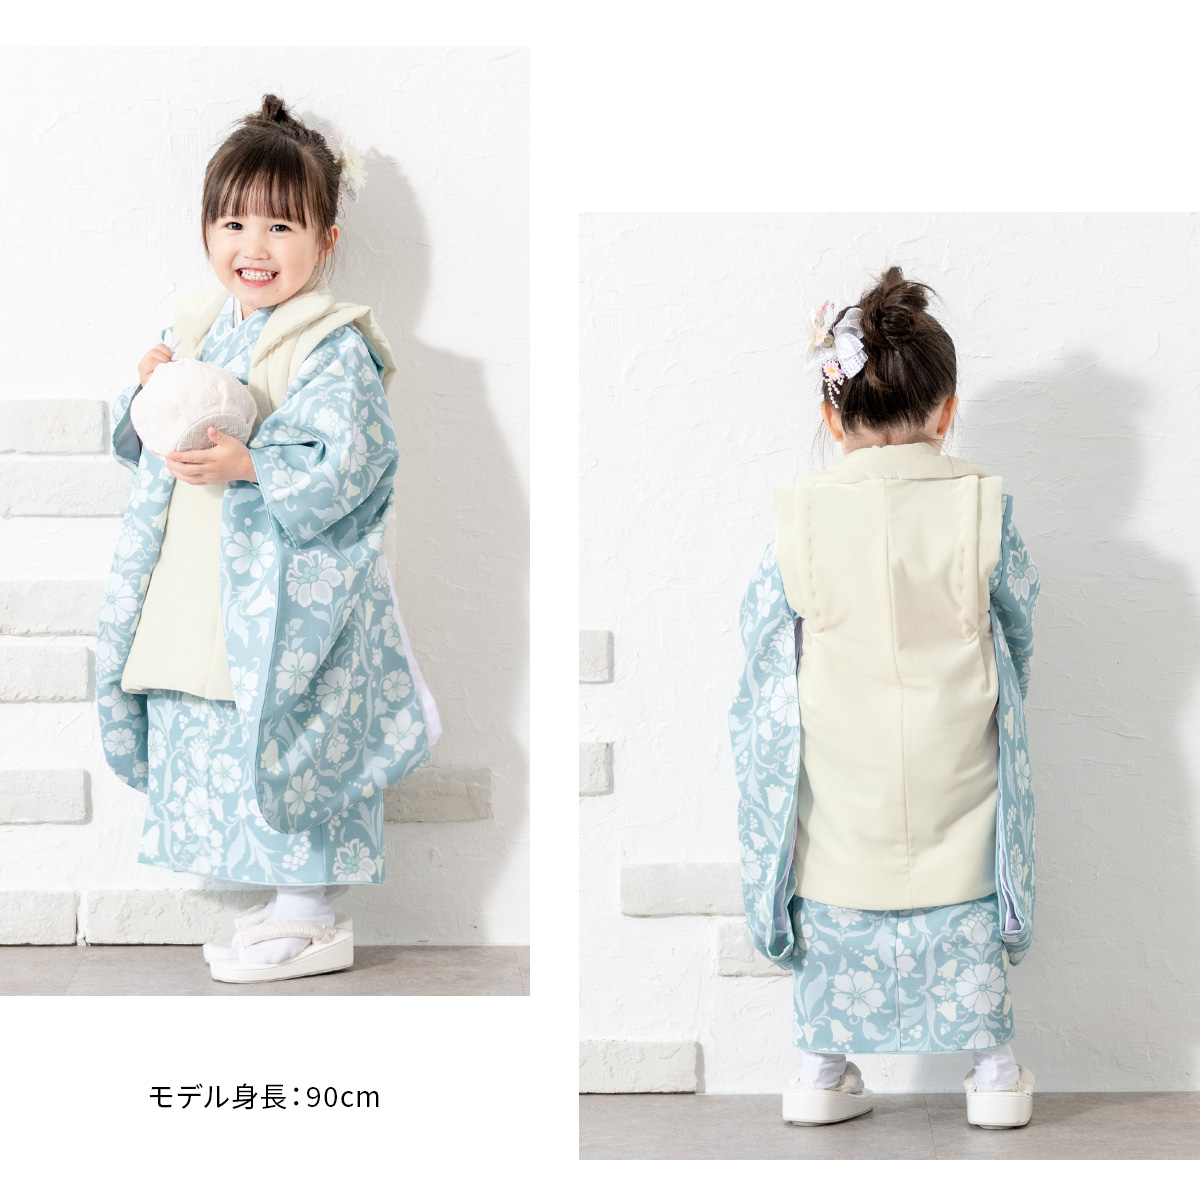 七五三 着物 3歳 販売 女の子 三歳 着物セット 被布セット 白 青系 花 